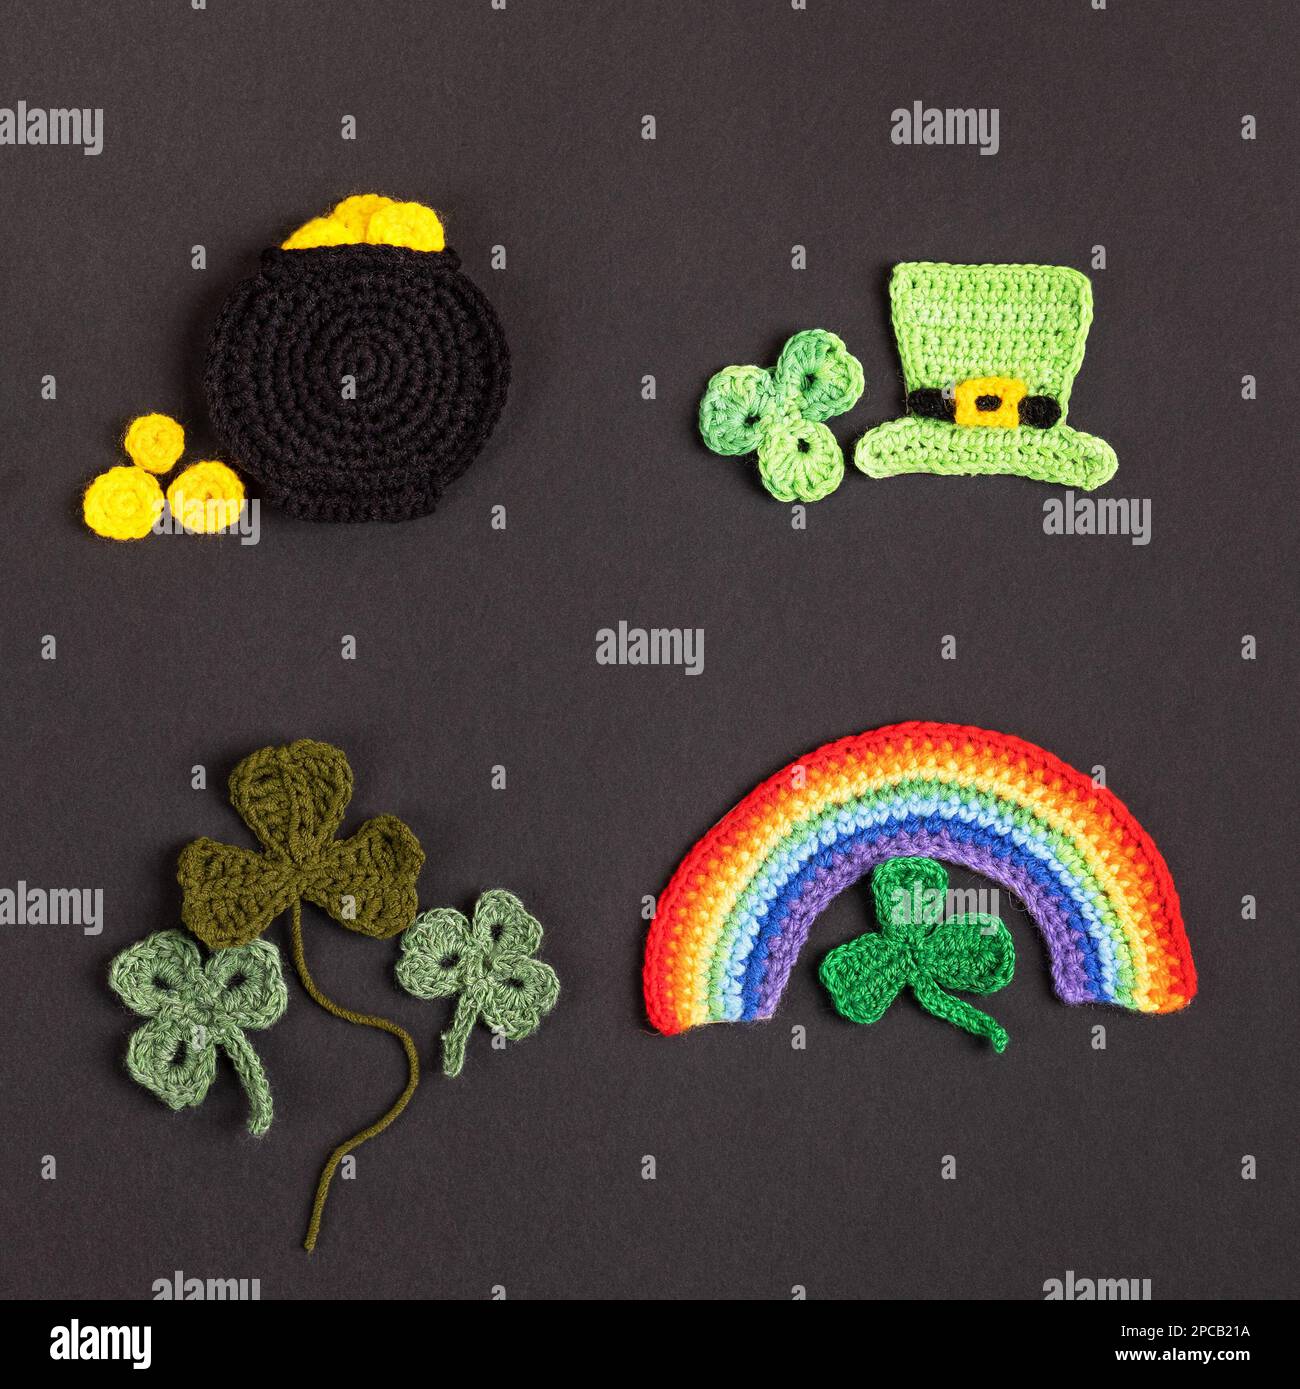 St. Patrick's Day Konzept. Gestrickte Komposition aus grünem Hut, goldenem Topf, Regenbogen und grünen Shamrocks auf schwarzem Hintergrund Stockfoto